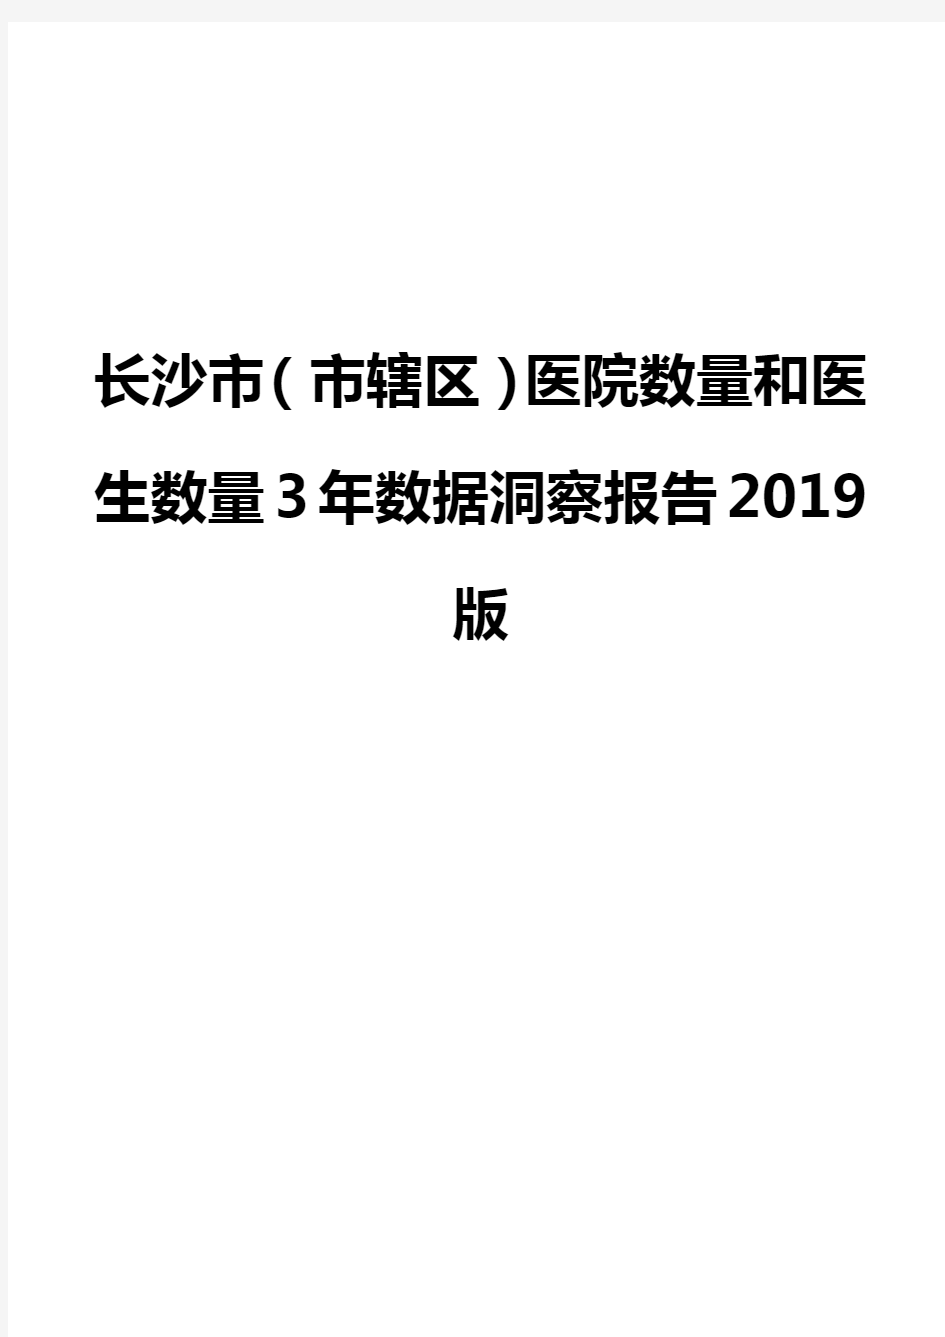 长沙市(市辖区)医院数量和医生数量3年数据洞察报告2019版